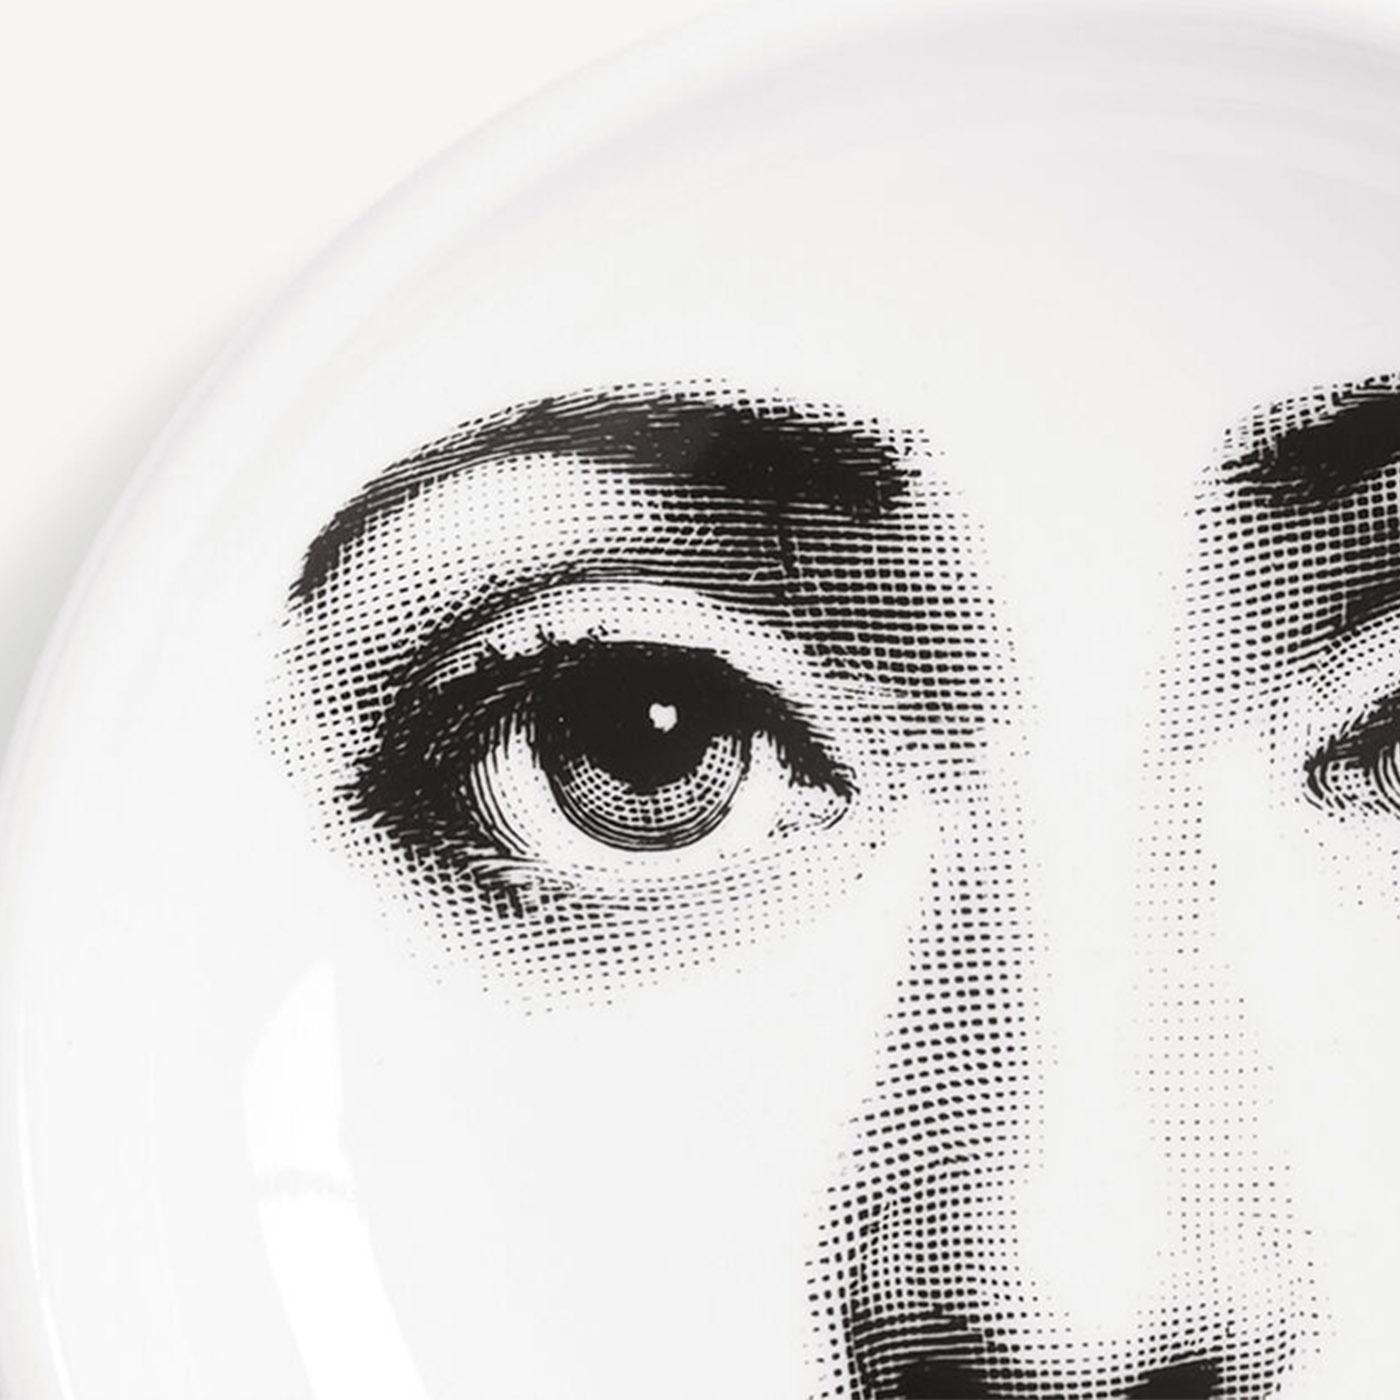 Fornasettis Neuinterpretationen des Gesichts der Opernsängerin Lina Cavalieri bilden die Grundlage für die ikonische Serie Tema e Variazioni und machen diesen handverzierten Porzellan-Aschenbecher zu einem Muss für Sammler und Kunstliebhaber